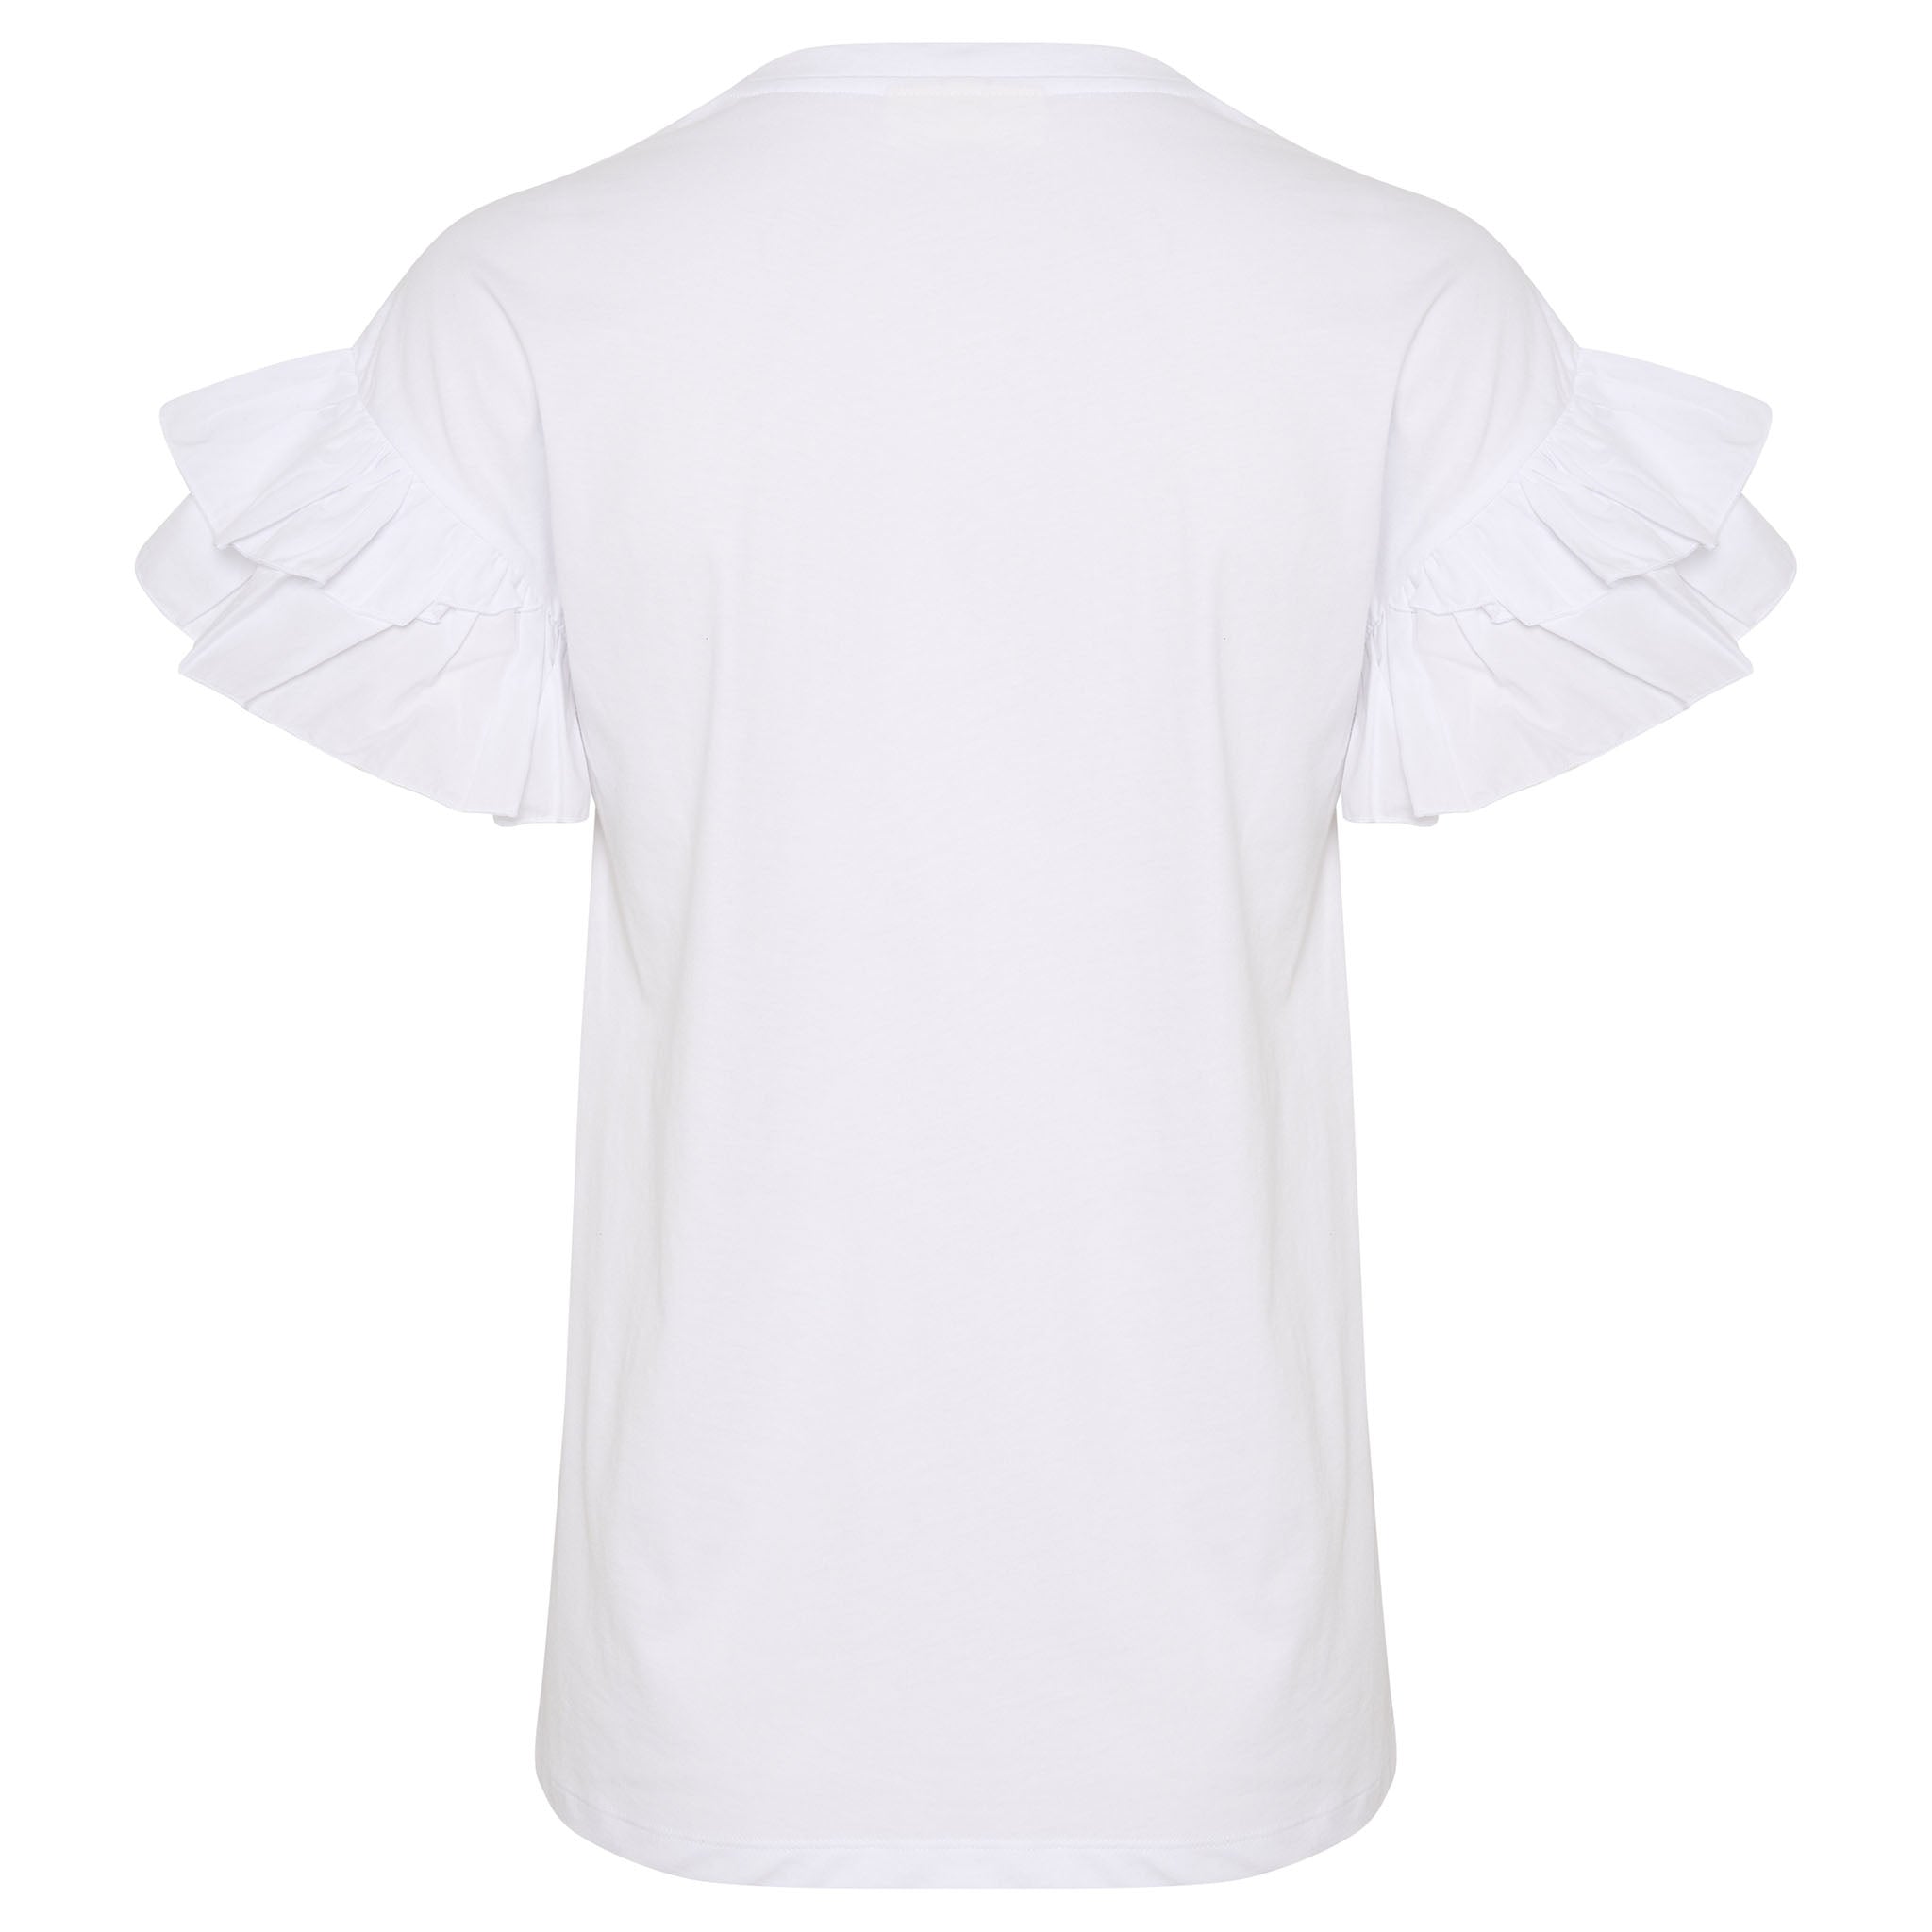 In Wear, valkoinen t-paita, jossa on frilla-hihat. Takakuva.